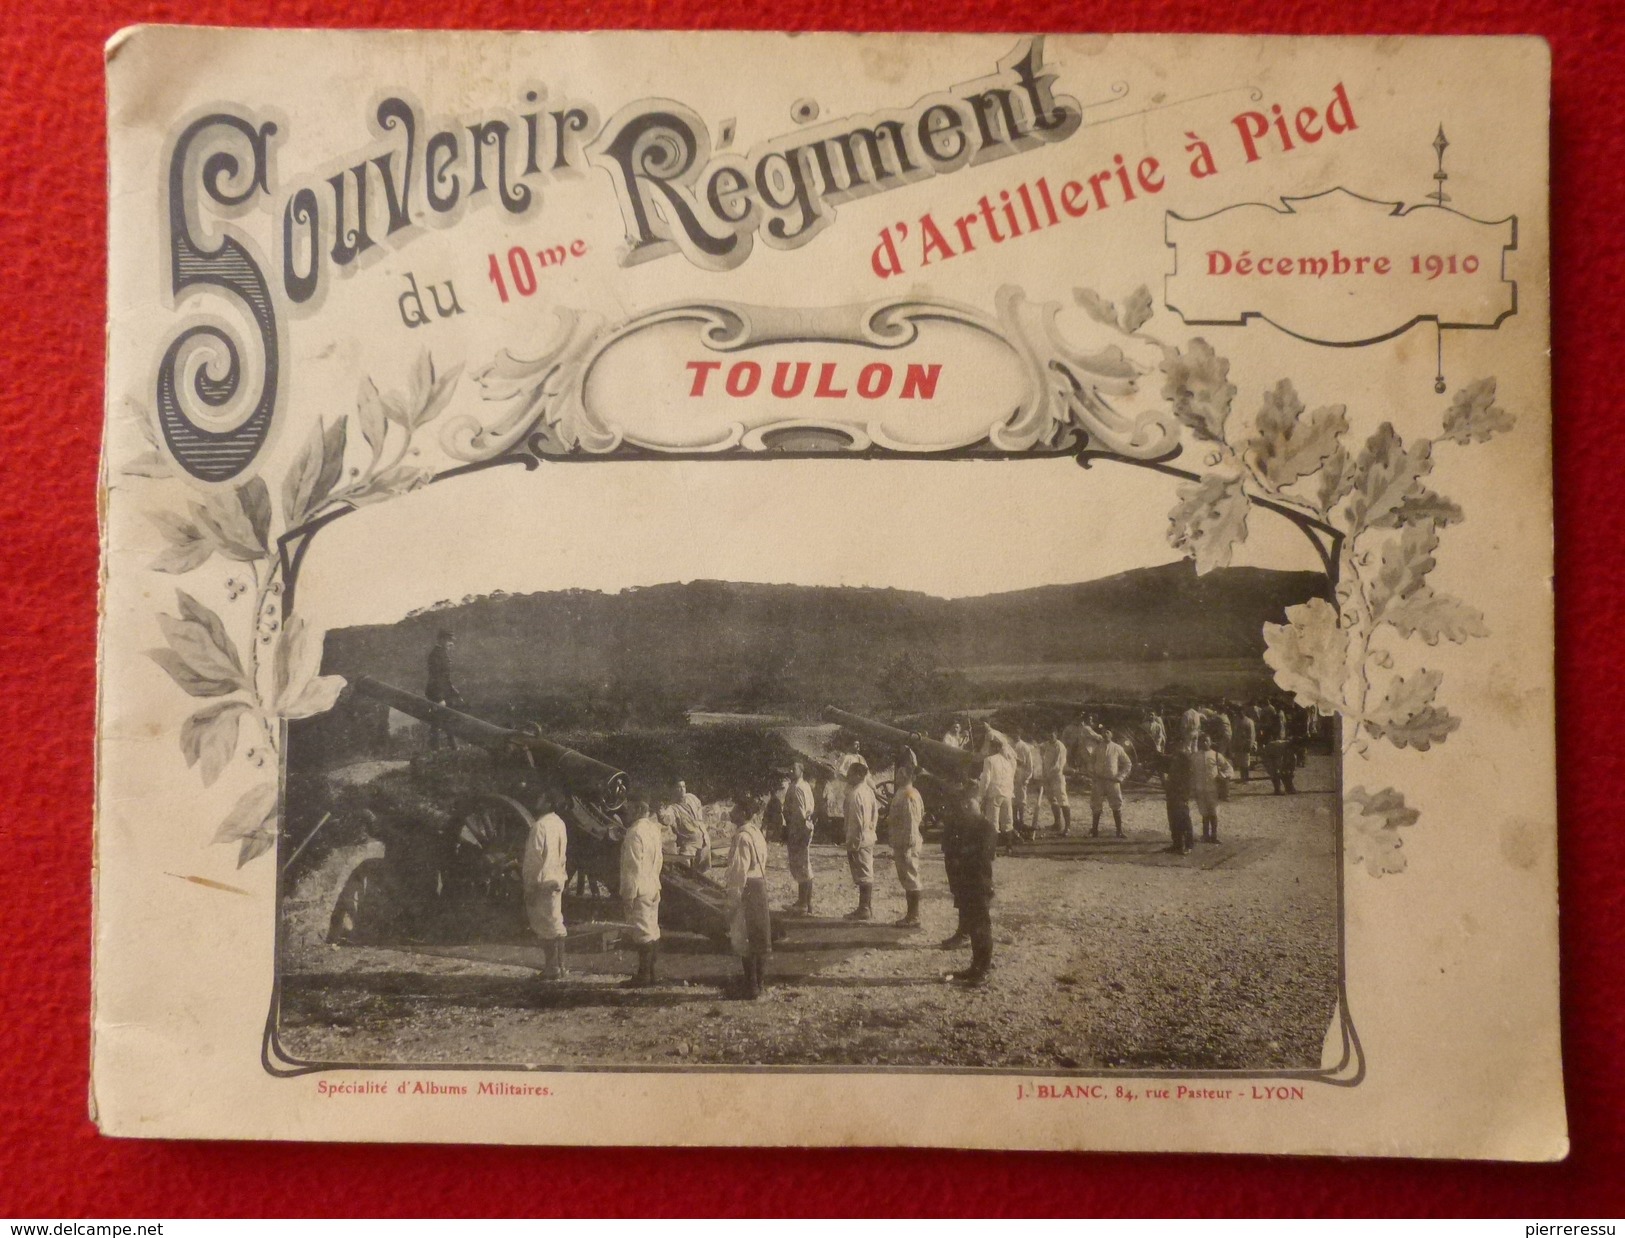 TOULON 10 REGIMENT D ARTILLERIE A PIED 1910 - Documents